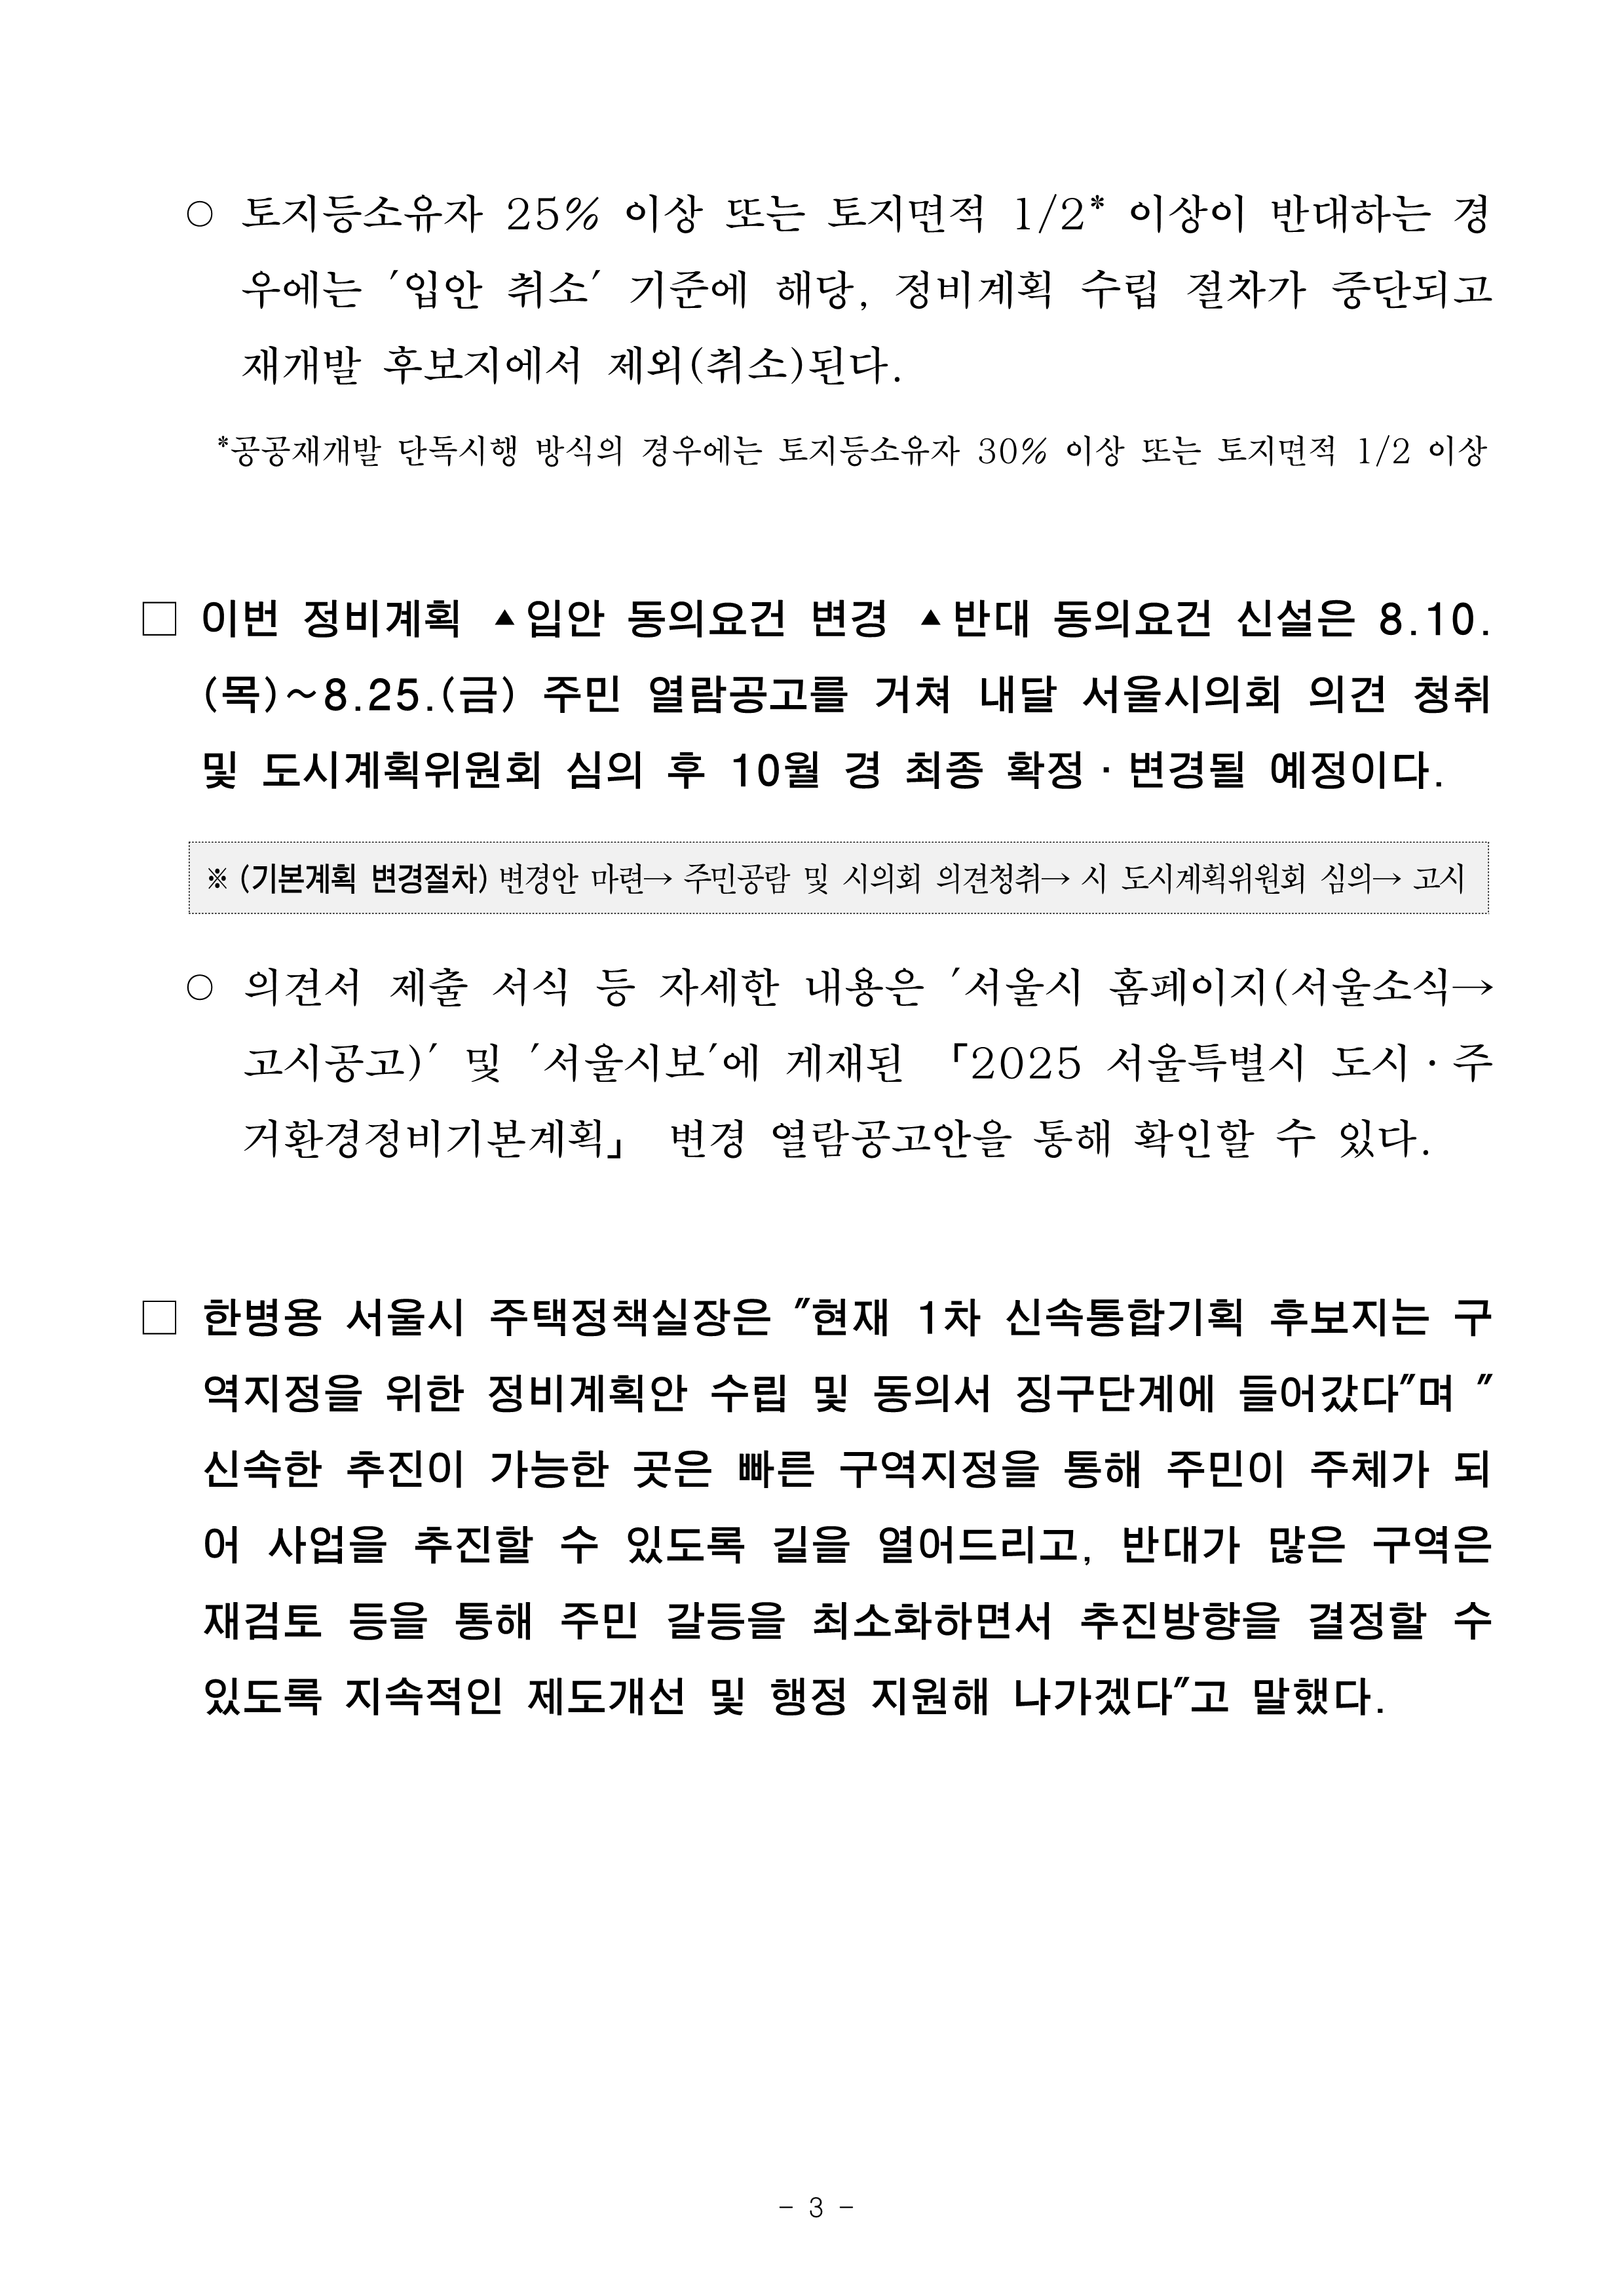 (석간)서울시, 신속통합기획 재개발 정비계획 _입안 동의율 50퍼센트_로 완화_3.png